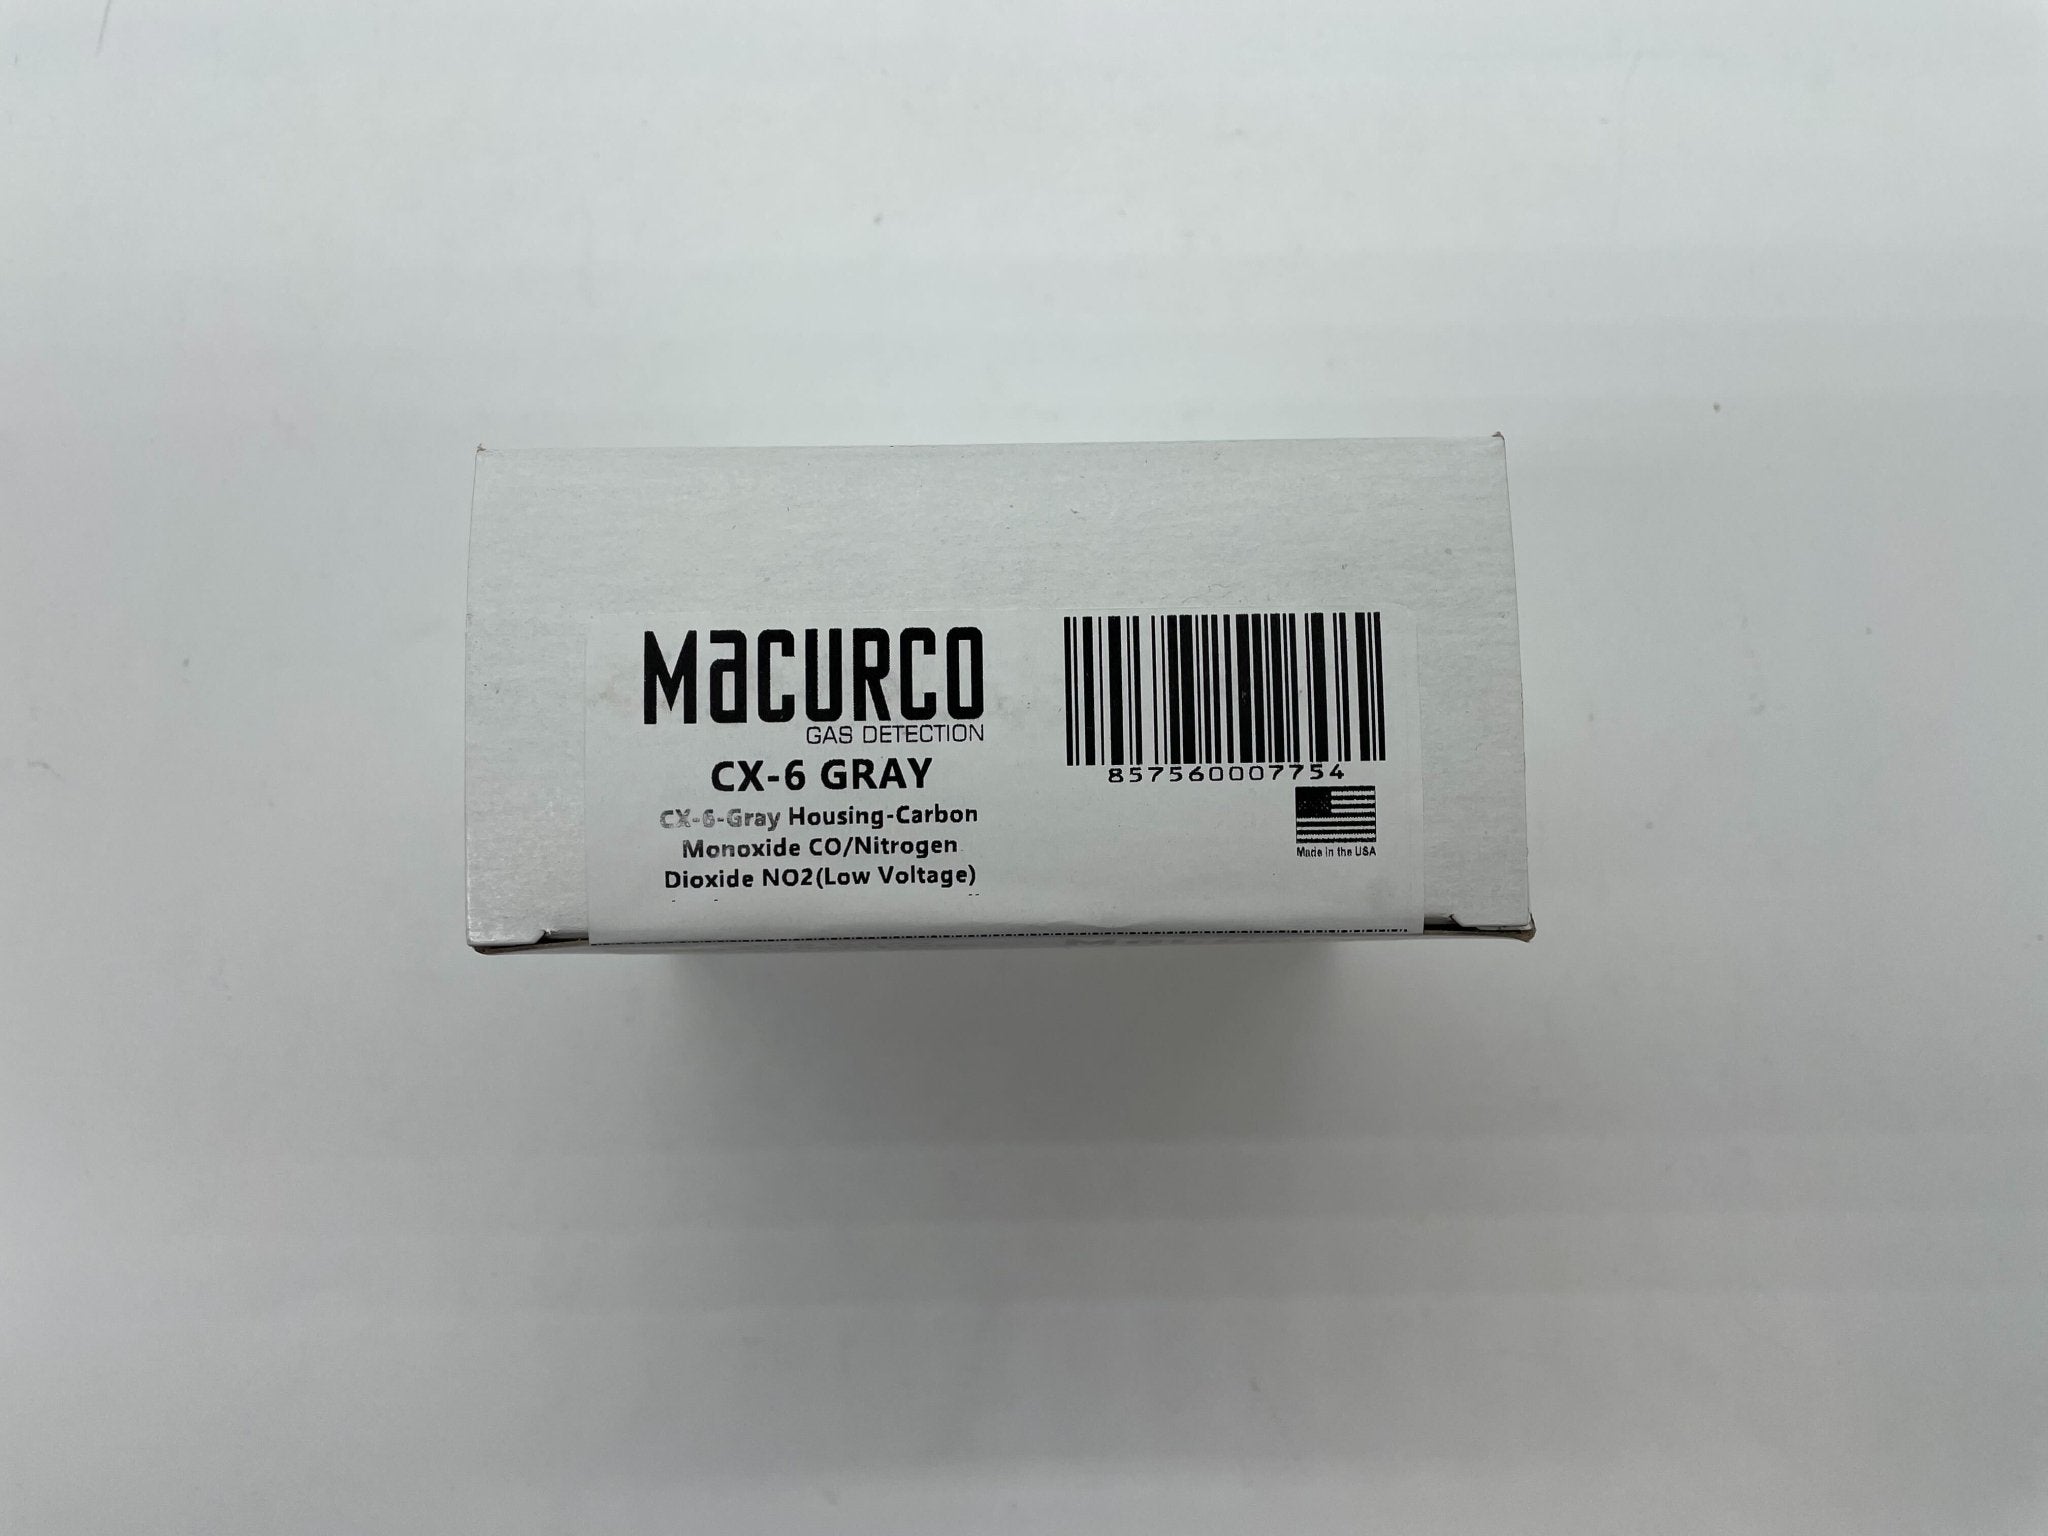 Macurco CX-6 Carbon Monoxide Co/ NO2 - The Fire Alarm Supplier